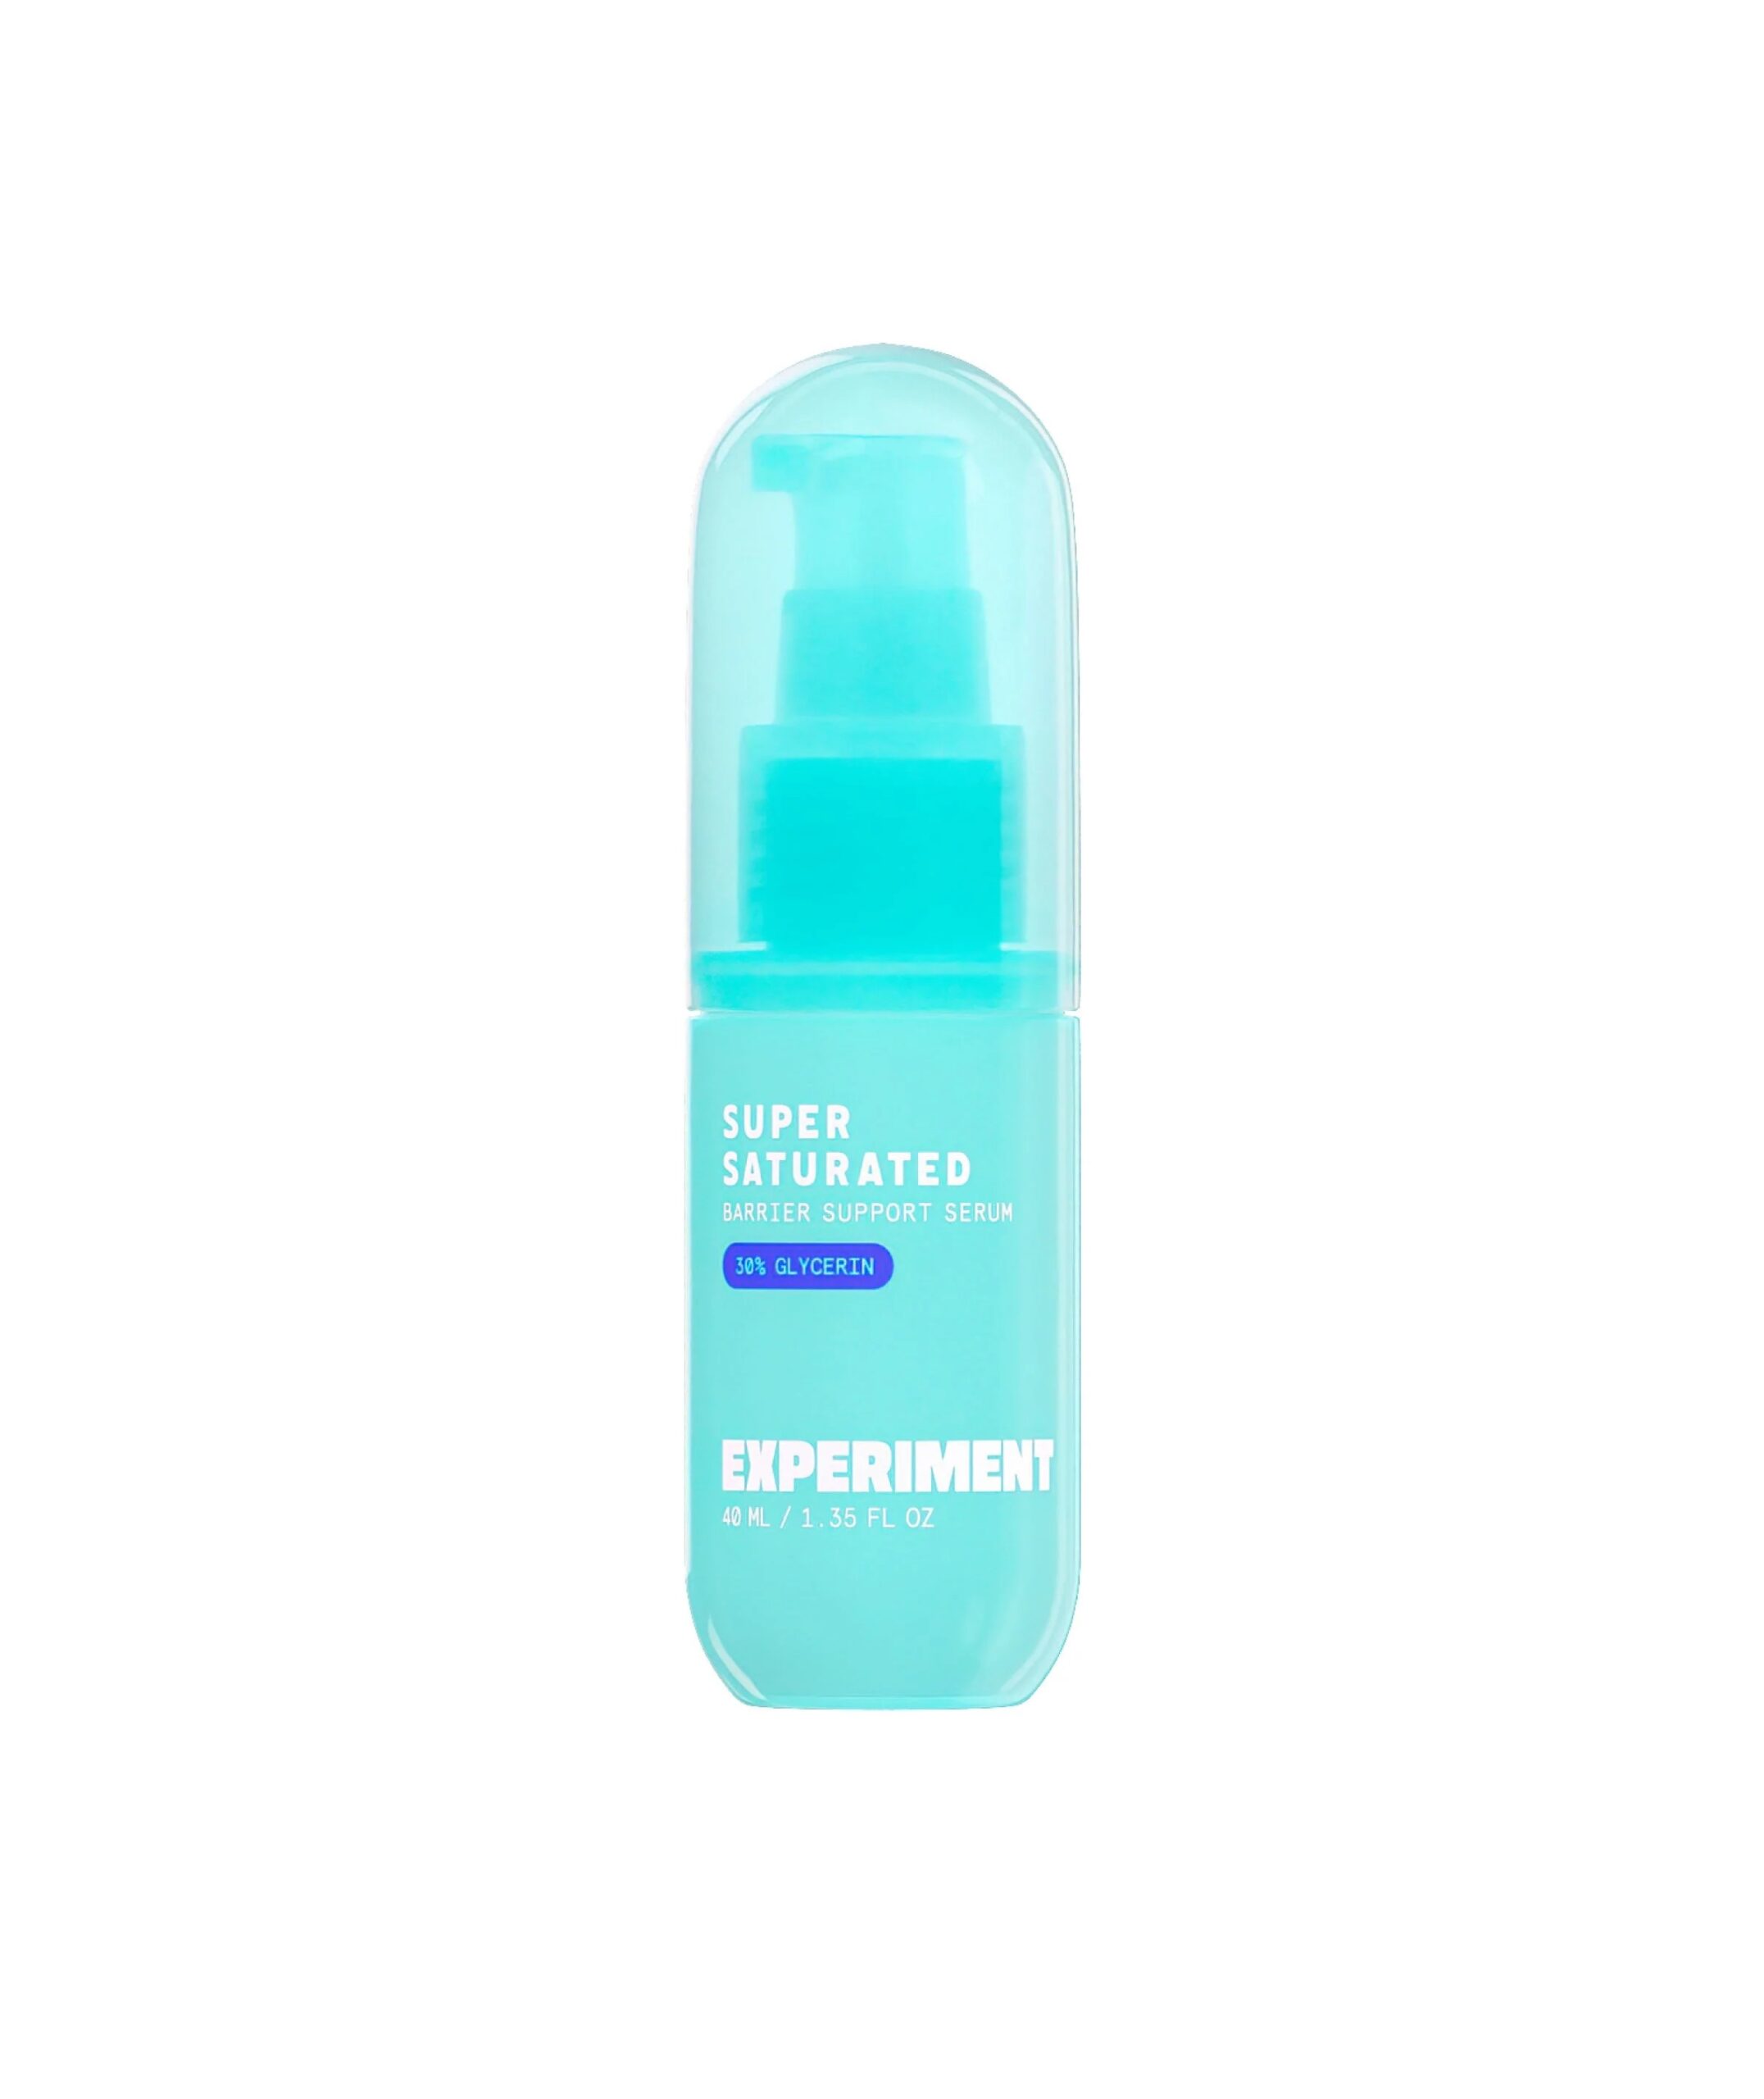 A blue bottle of an Experiment Beauty serum.